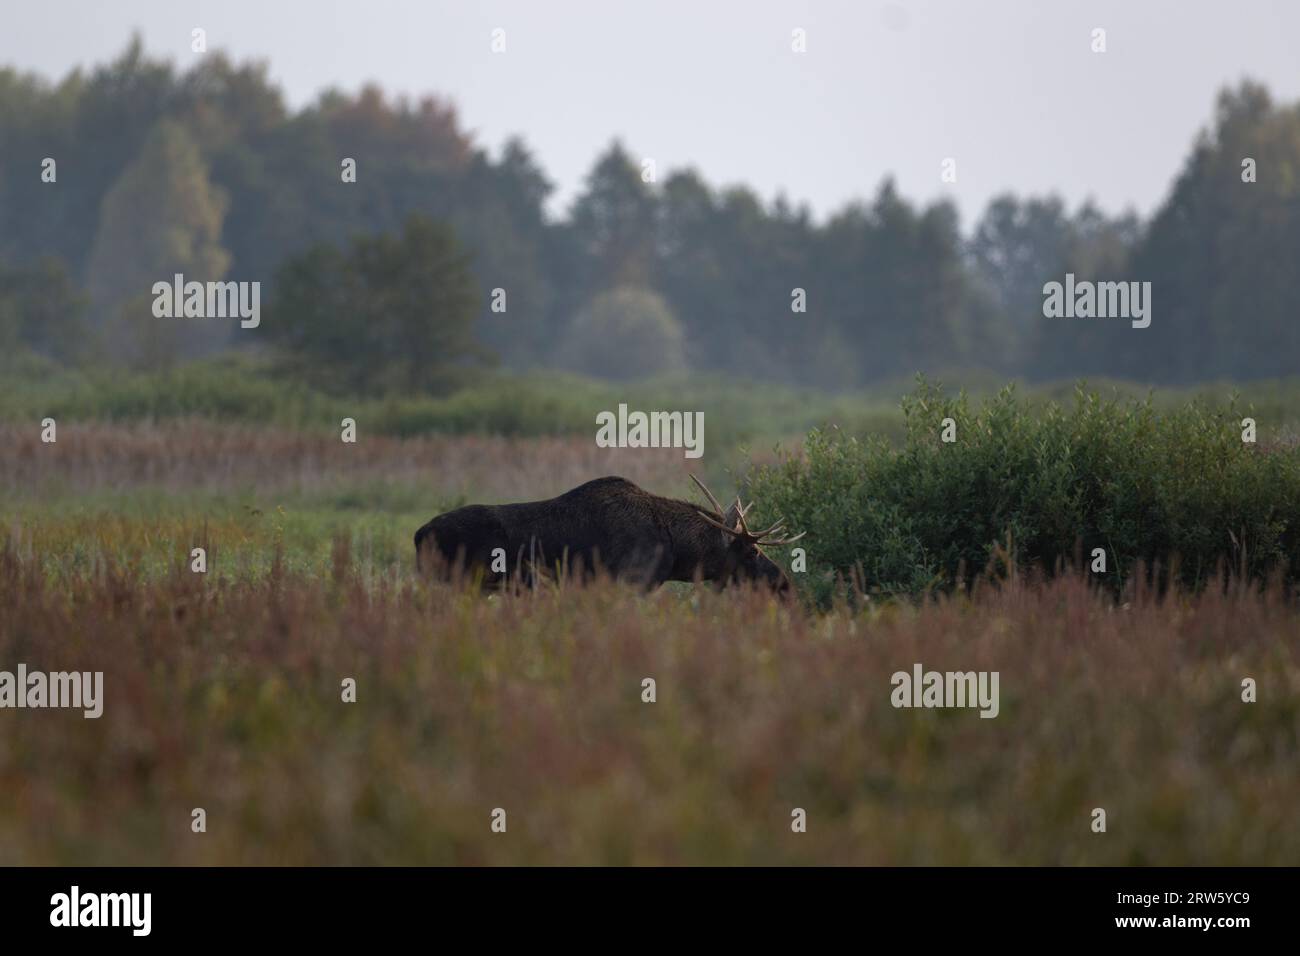 Europäischer Elch während der Furche im Biebrzanski Park. Elchmännchen laufen auf der Wiese. Elche in der Herbstsaison. Großer Hirsch mit flachen Geweihen. Stockfoto